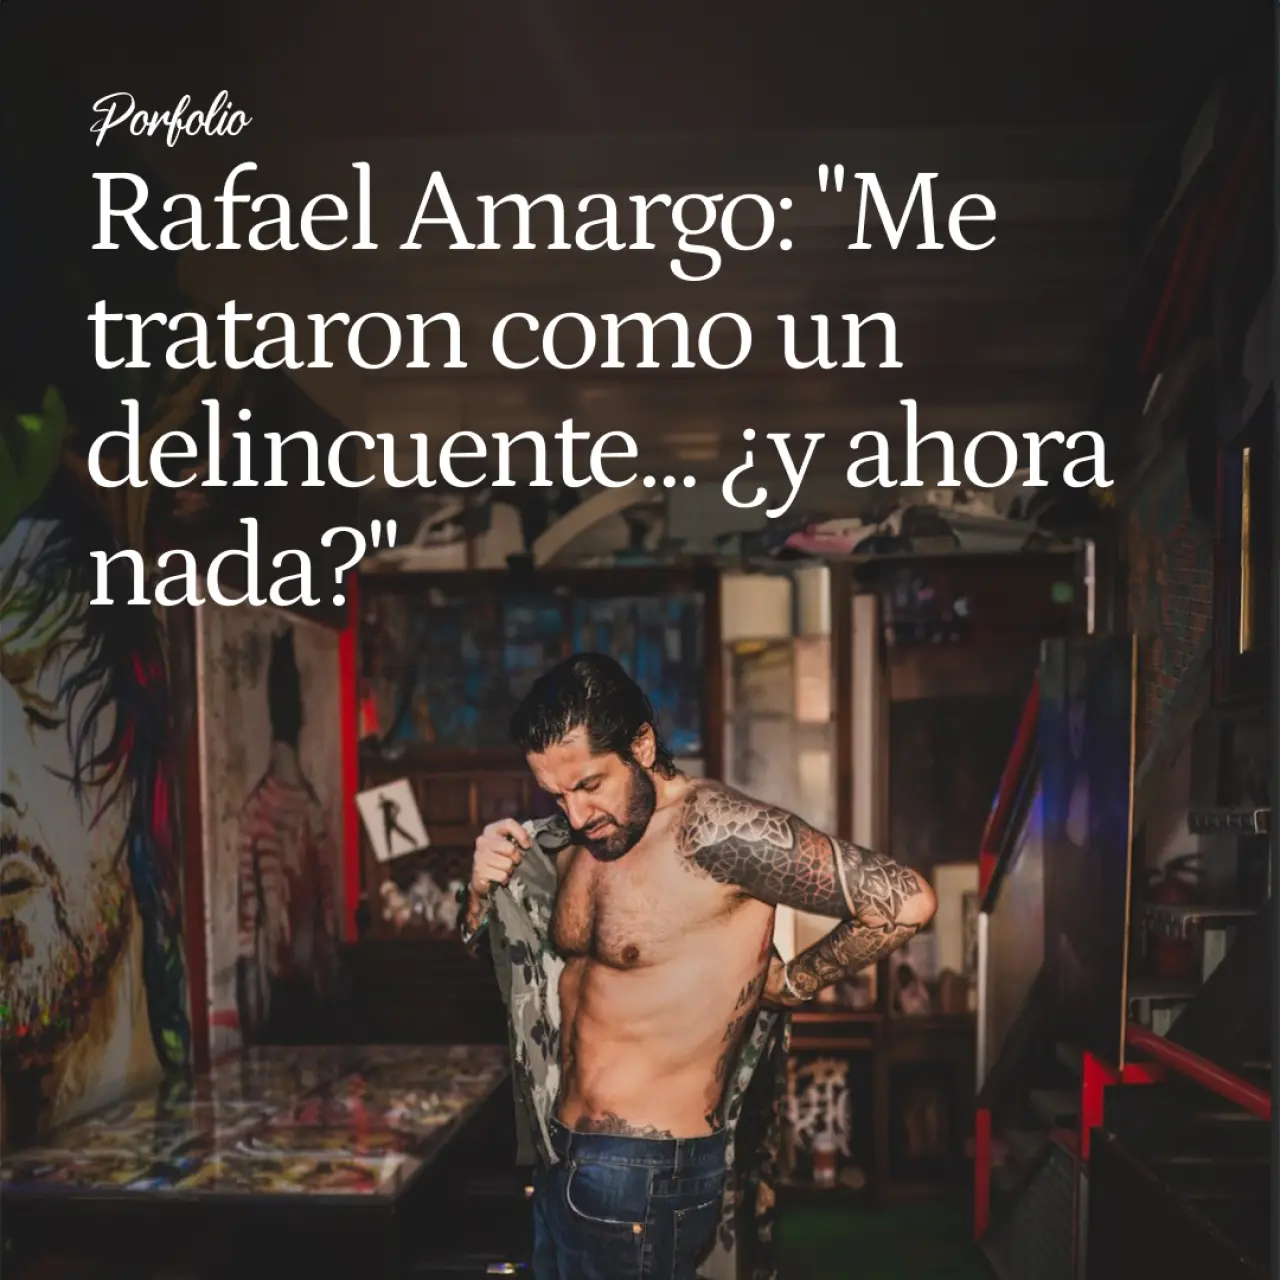 Rafael Amargo se desnuda tras salir de prisión: "Entré en un módulo duro, me trataron como un delincuente... ¿y ahora nada?"